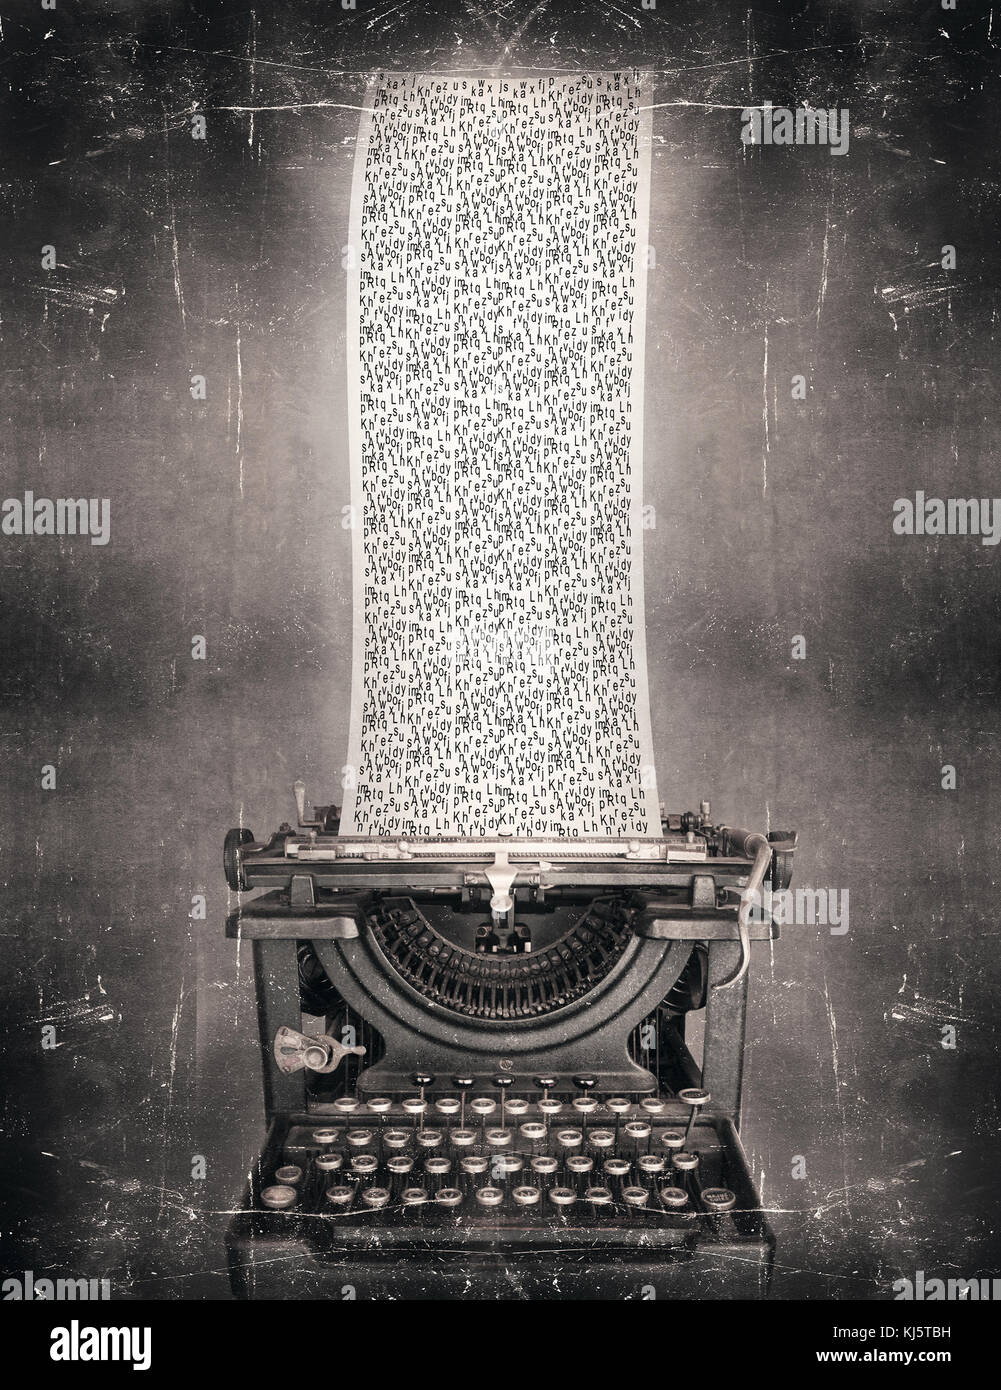 Imaginer surréaliste en noir et blanc d'une belle machine à écrire à l'ancienne classique avec un très long article plein de l'alphabet des lettres dans un vintage st Banque D'Images